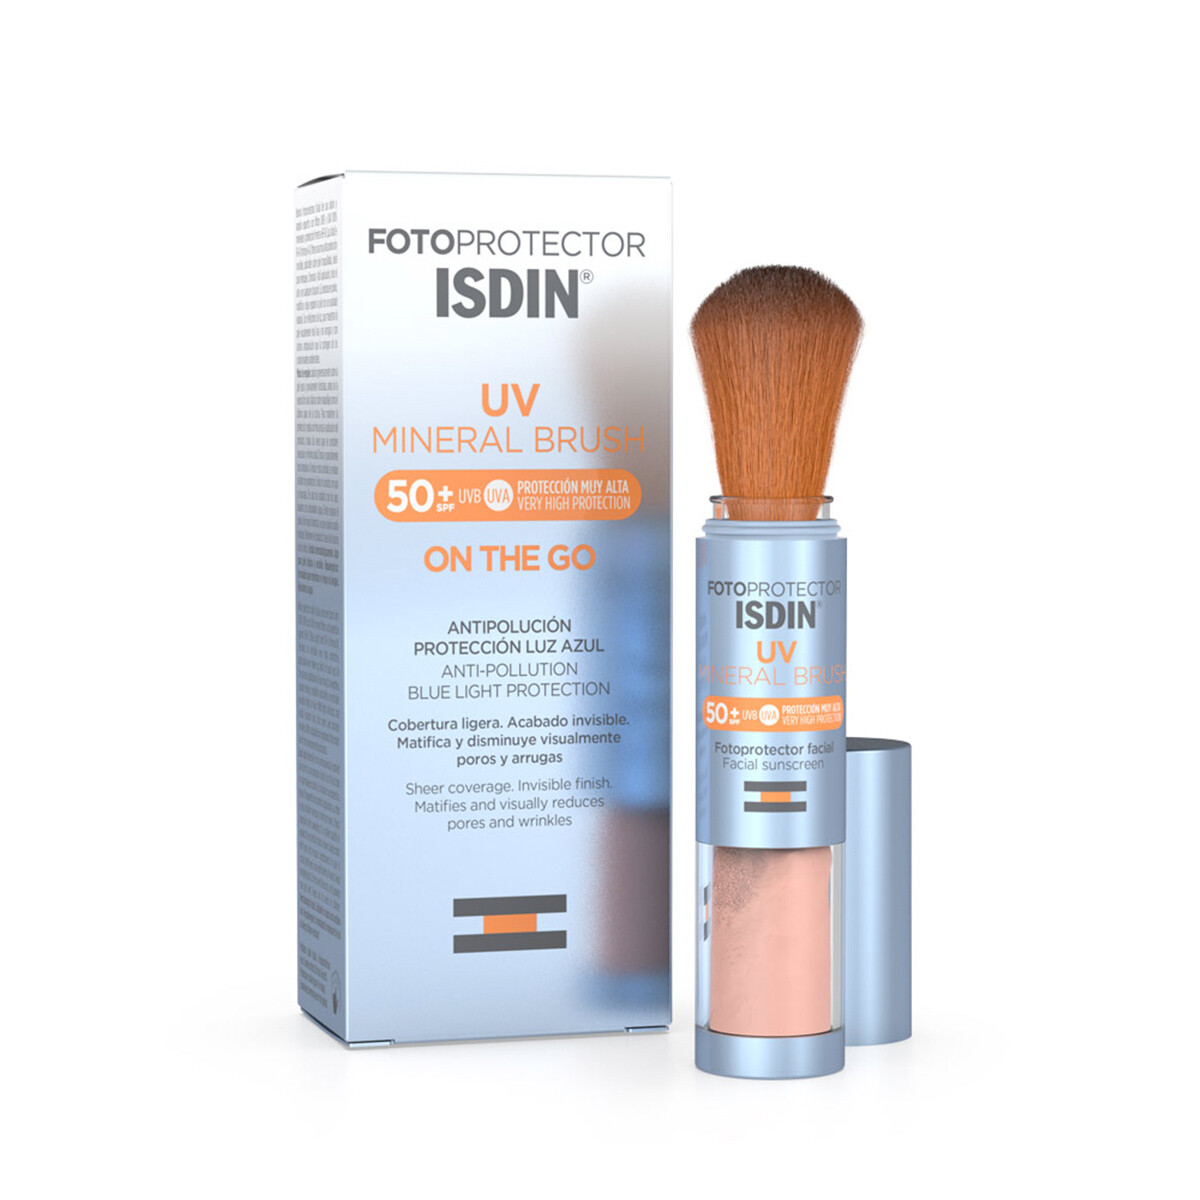 Fotoprotector UV Mineral Brush SPF 50+ - ISDIN 